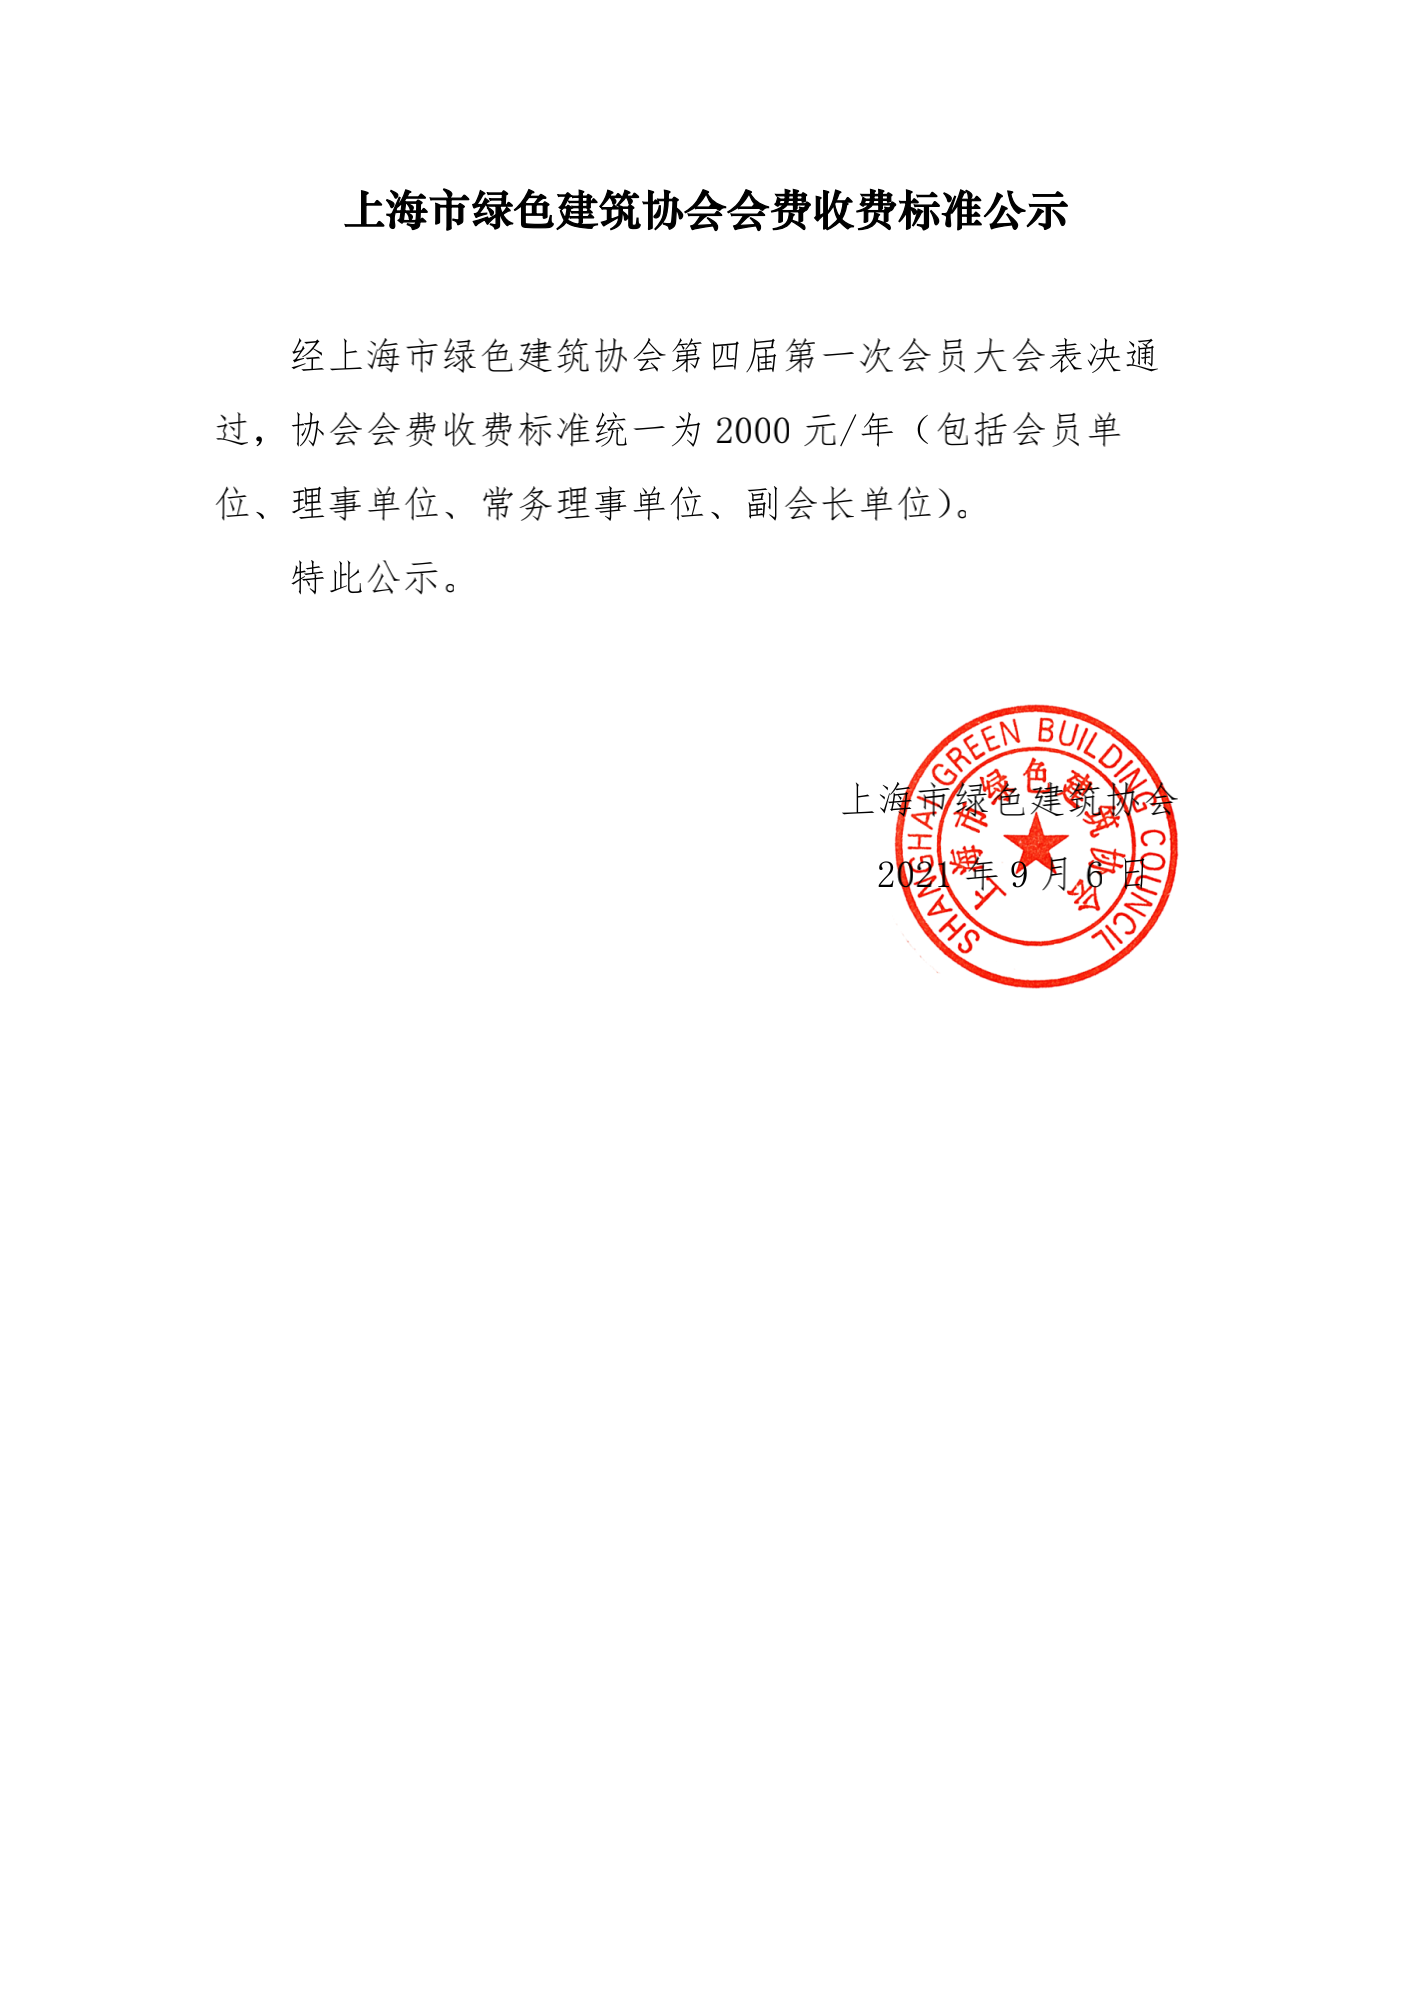 上海市绿色建筑协会会费收费标准公示